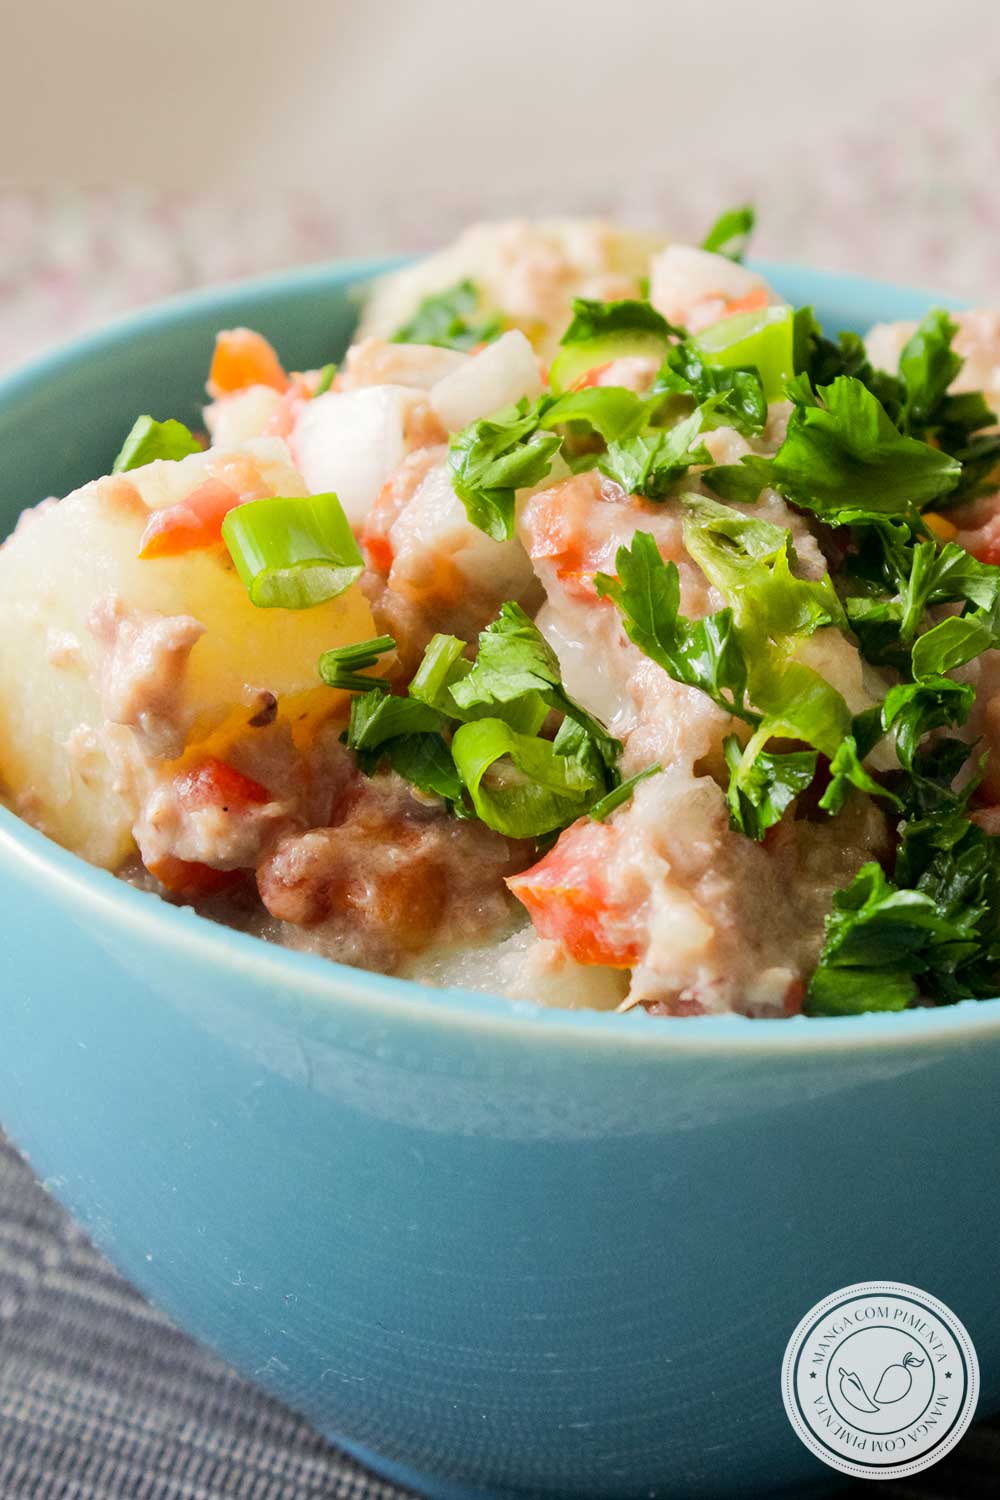 Receita de Salada de Atum com Batata e Tomate - um prato refrescante para o almoço ou jantar!